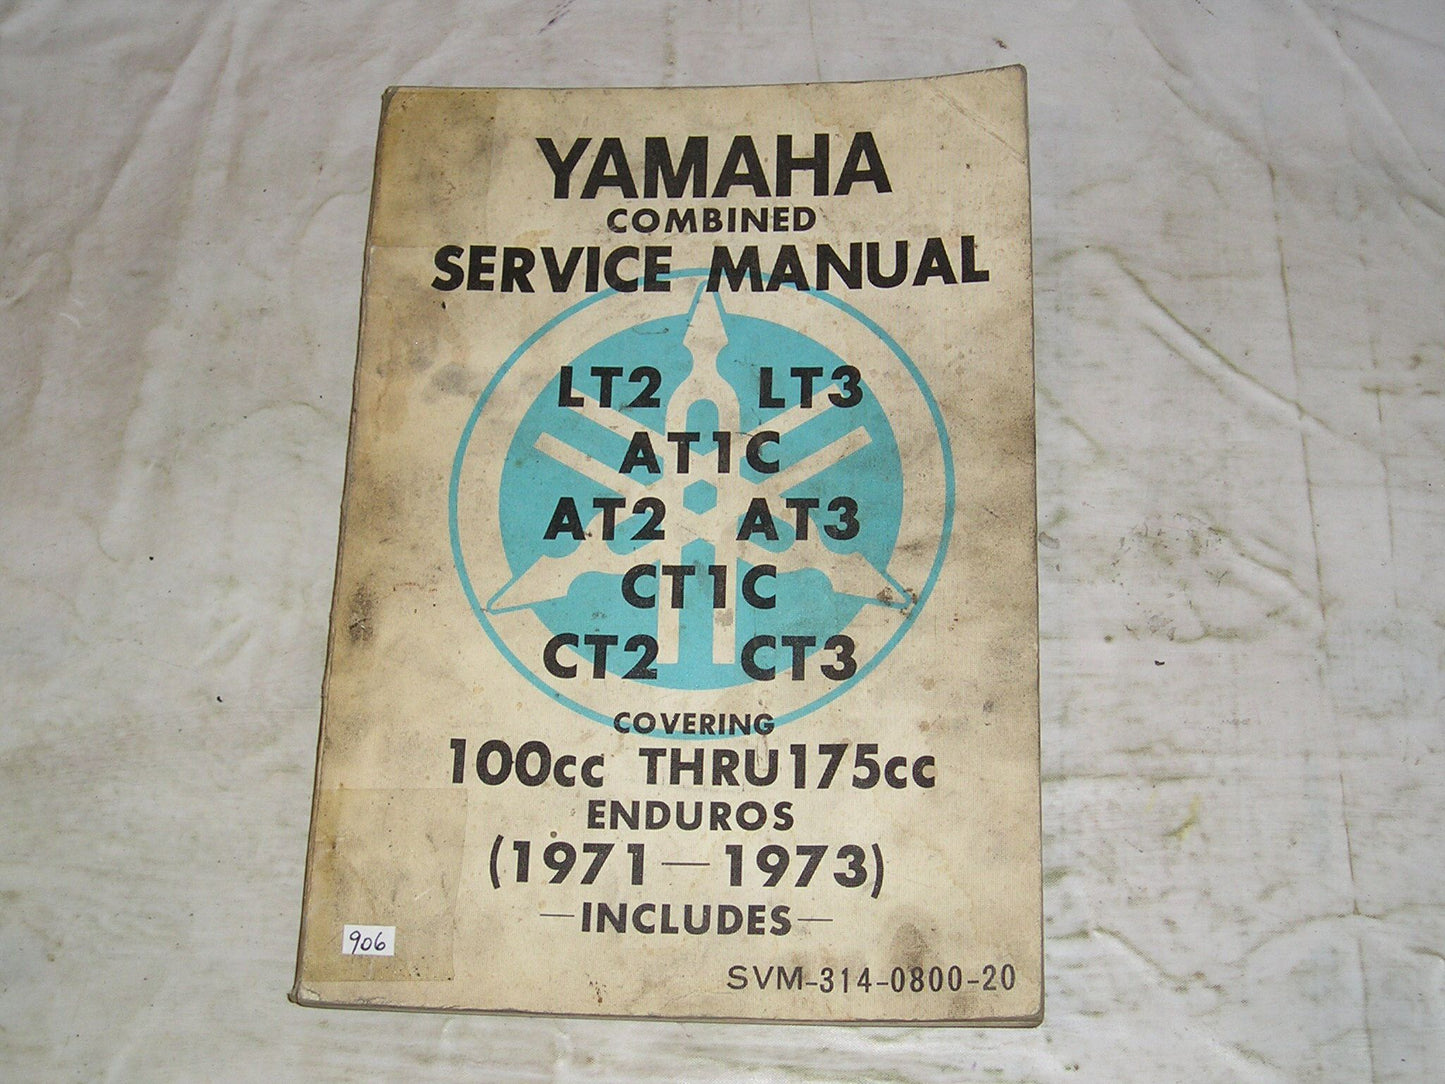 YAMAHA AT1 AT2 AT3 CT1 CT2 CT3 LT2 LT3 1971 1972 1973  Service Manual  LIT-11613-14-01  #906